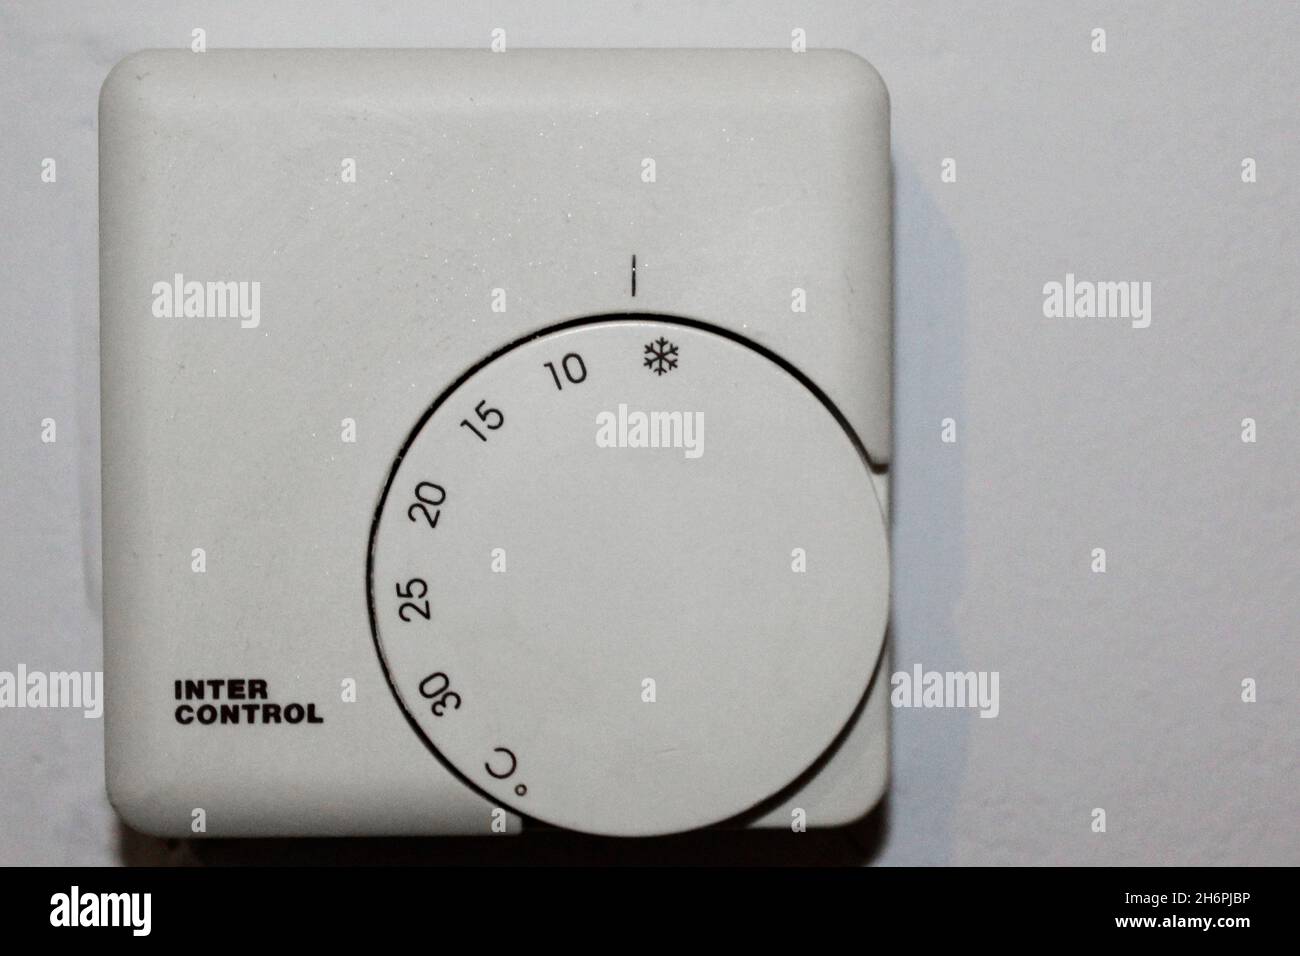 Weißer Thermostat zur Wärmeregulierung von 0 bis 30 Grad einstellbar, in einer Wohnung an einer Wand, komplett abgestellt. Stock Photo